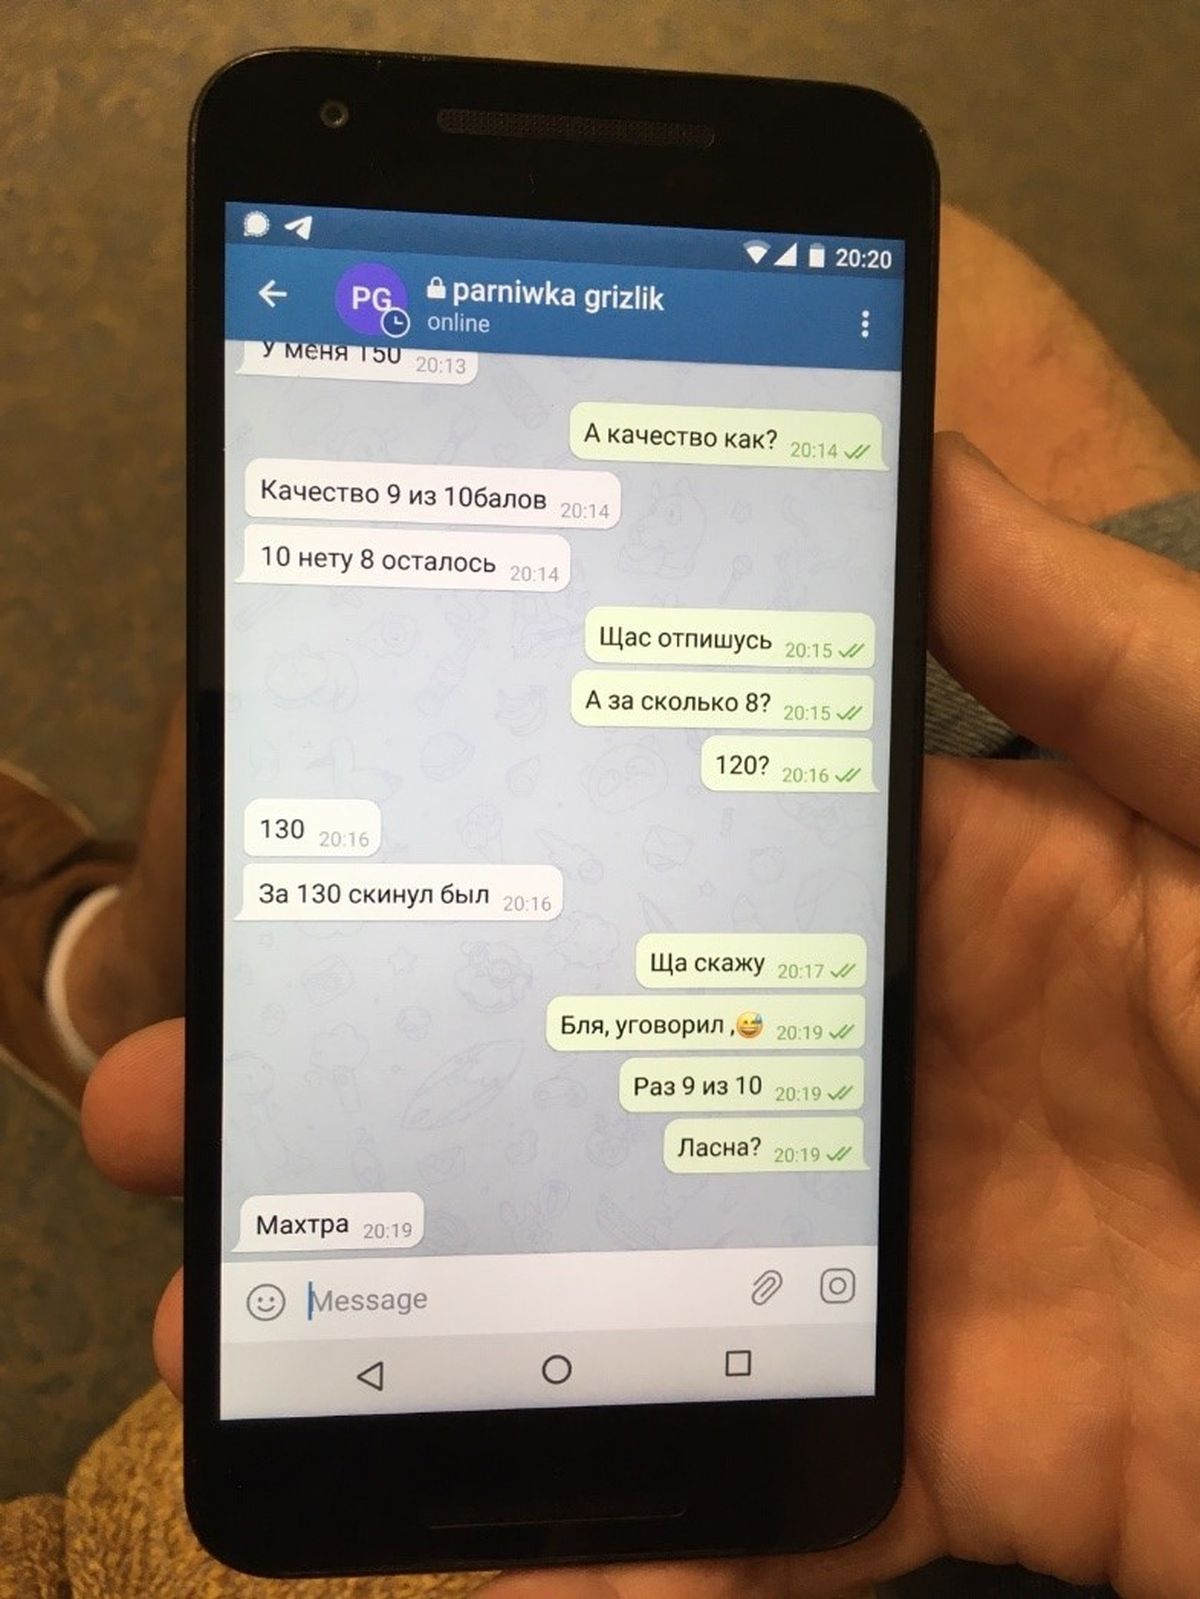 Veel üks pilt Telegrami chatist. Parniwka Grizliku nimega esines Telegramis Aleksandr.